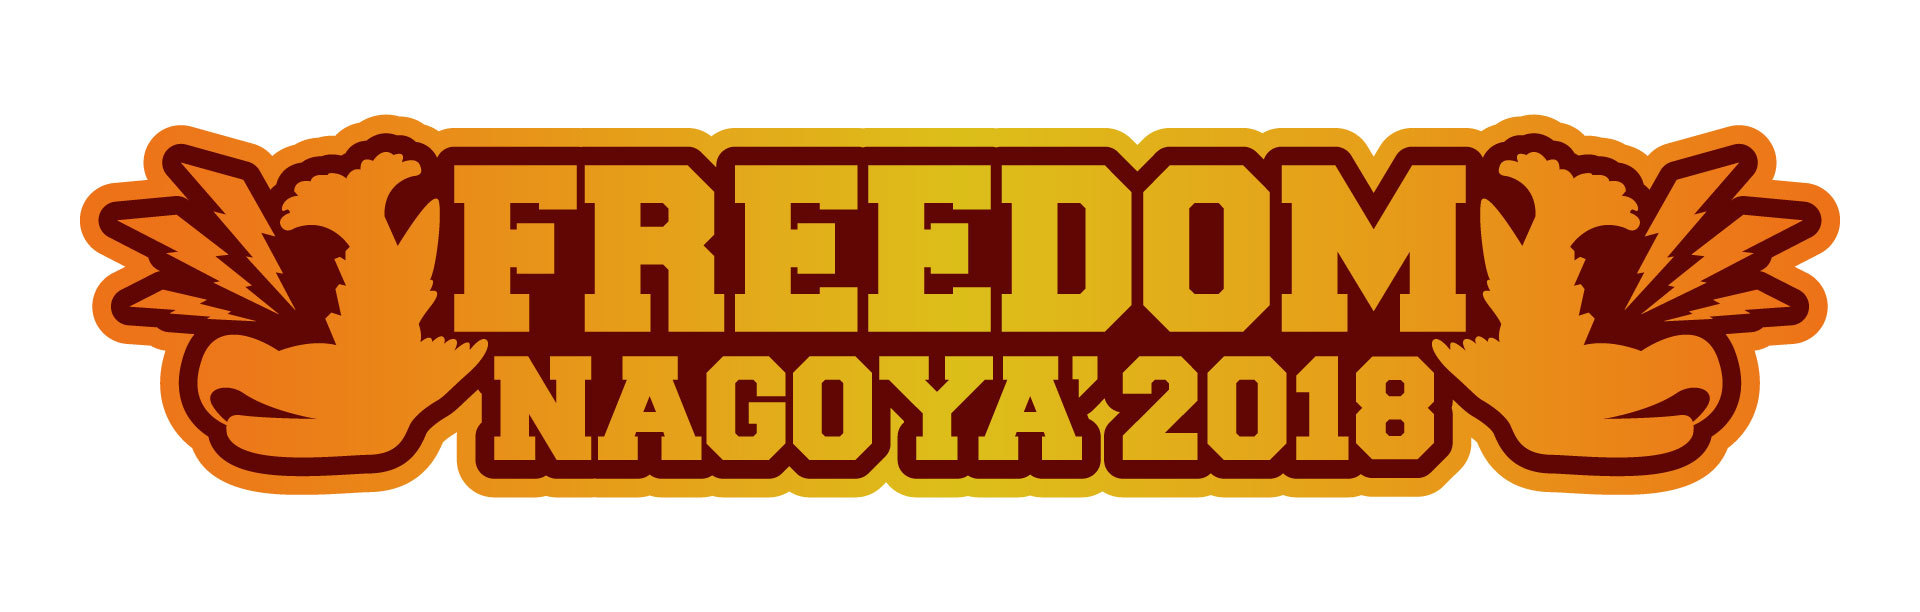 FREEDOM NAGOYA2018